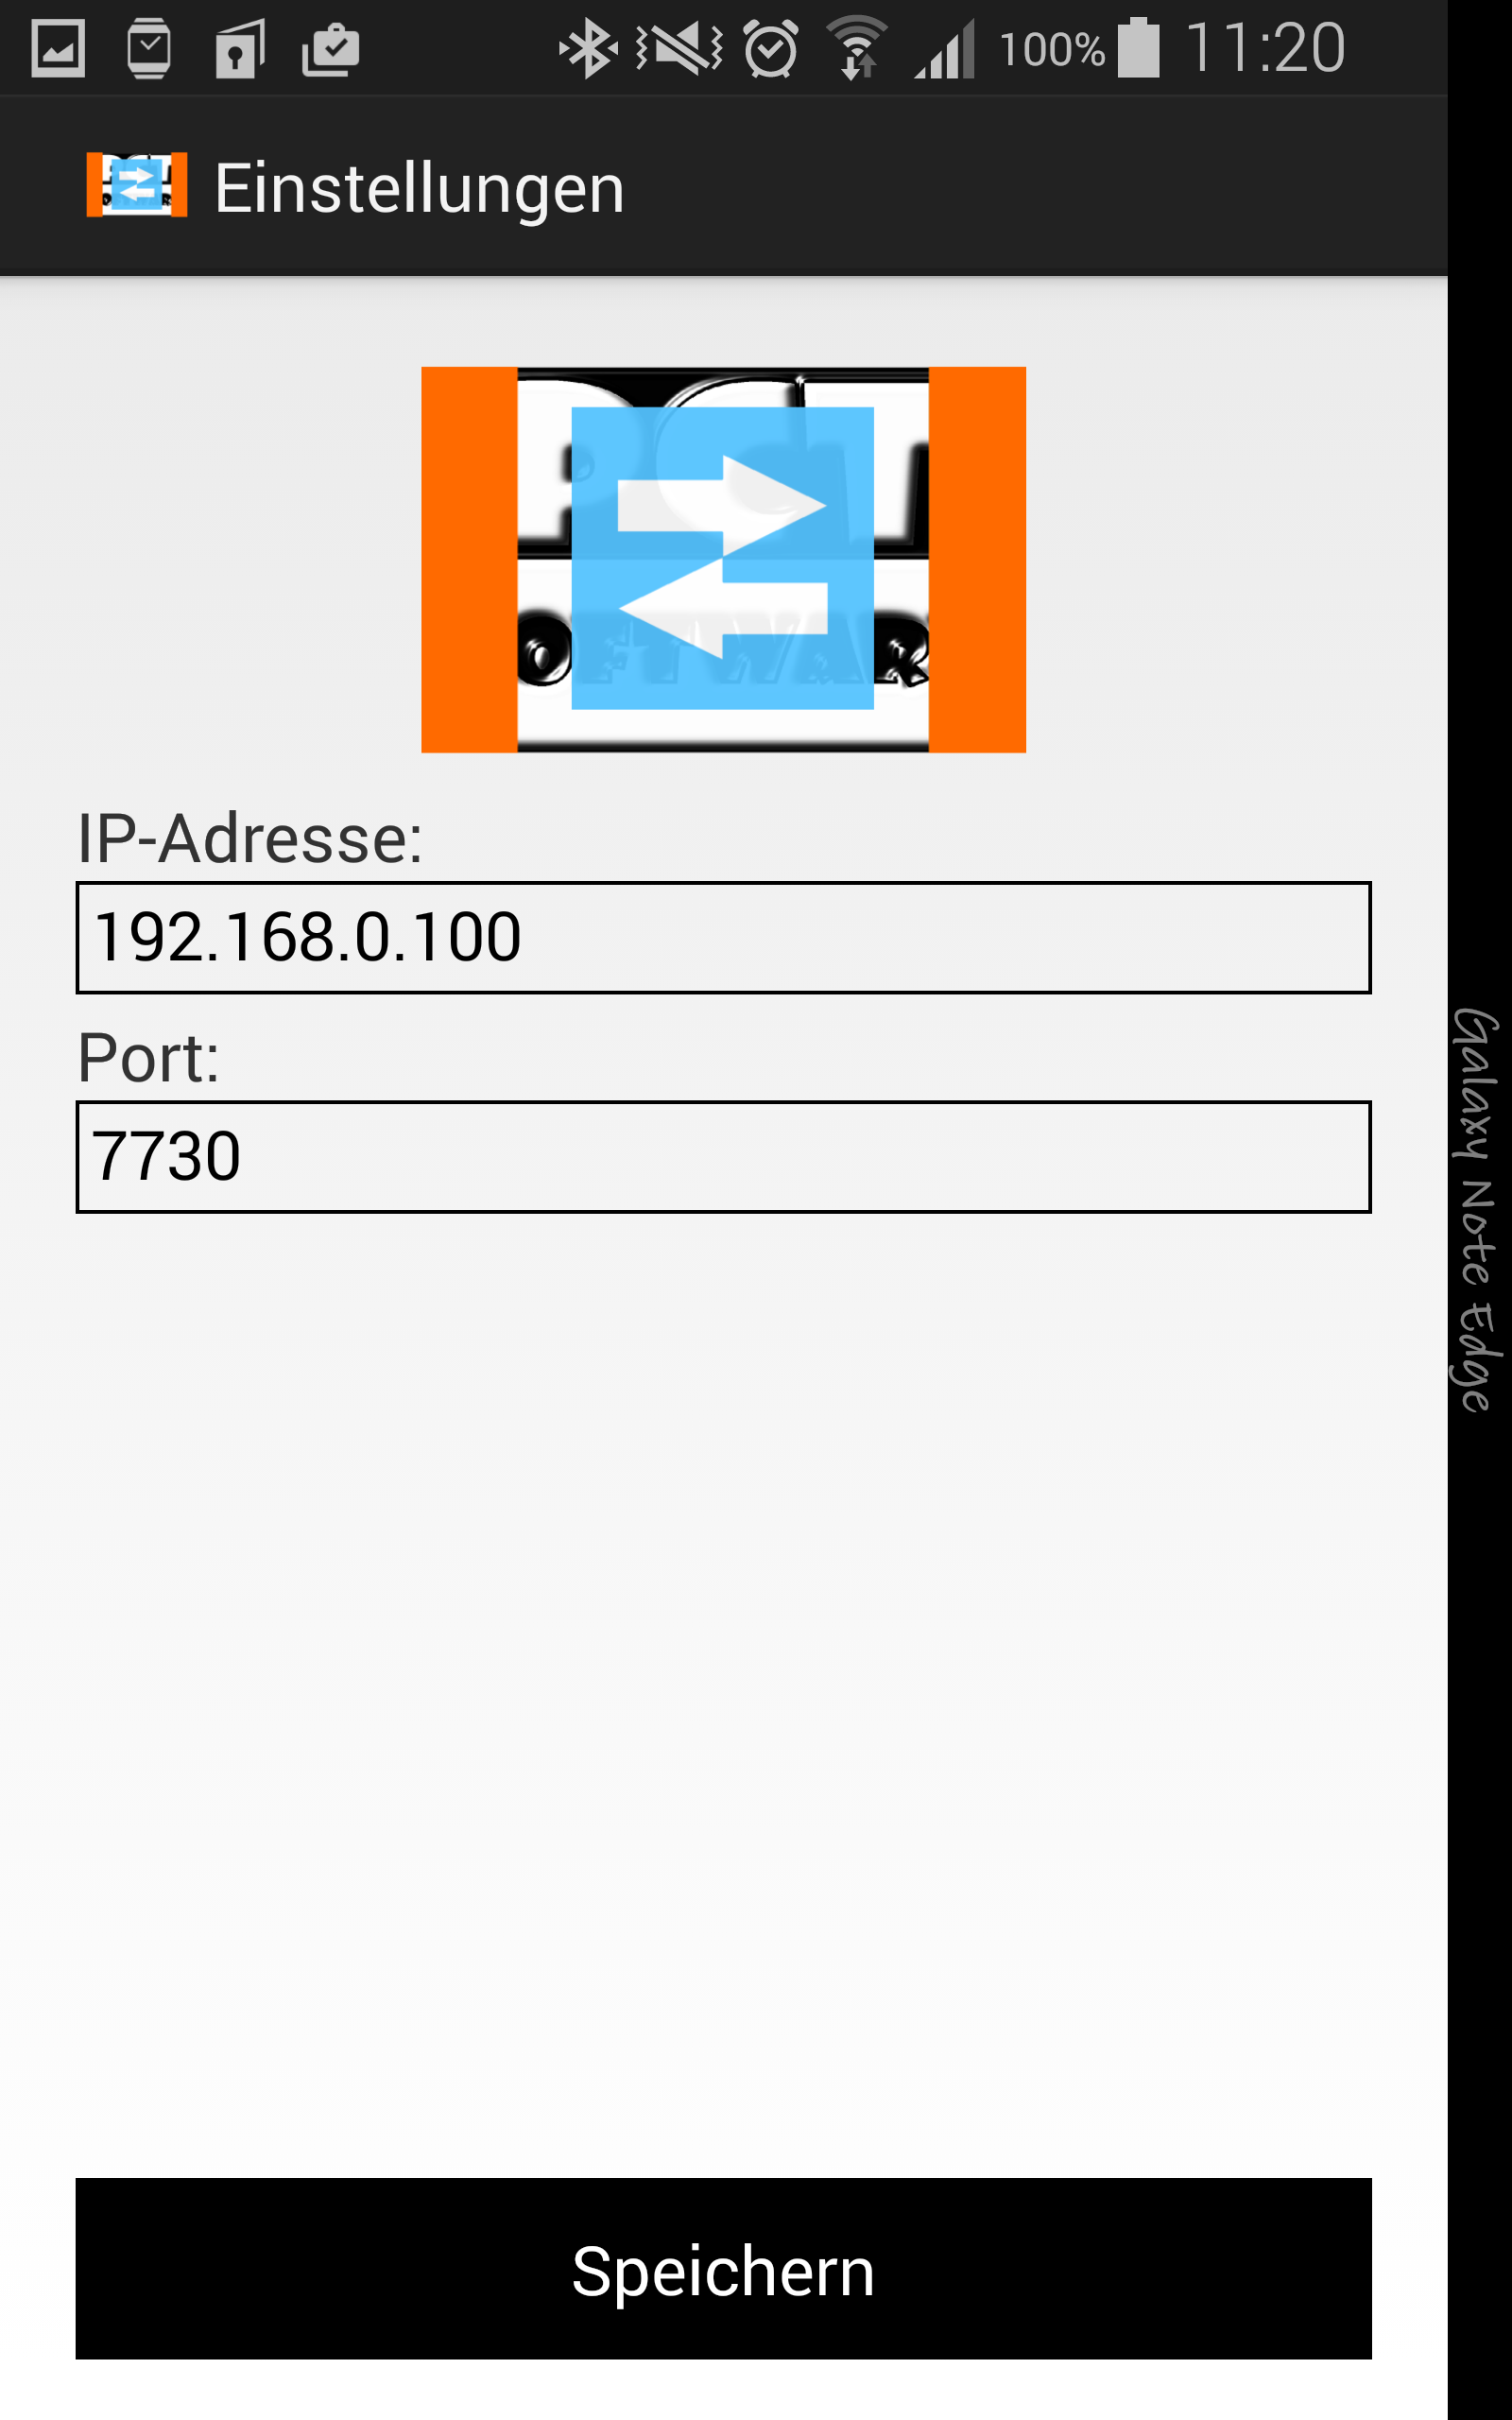 PCT-TDL - Client | Aufgaben anlegen und verwalten - Android App - Screenshot 3.